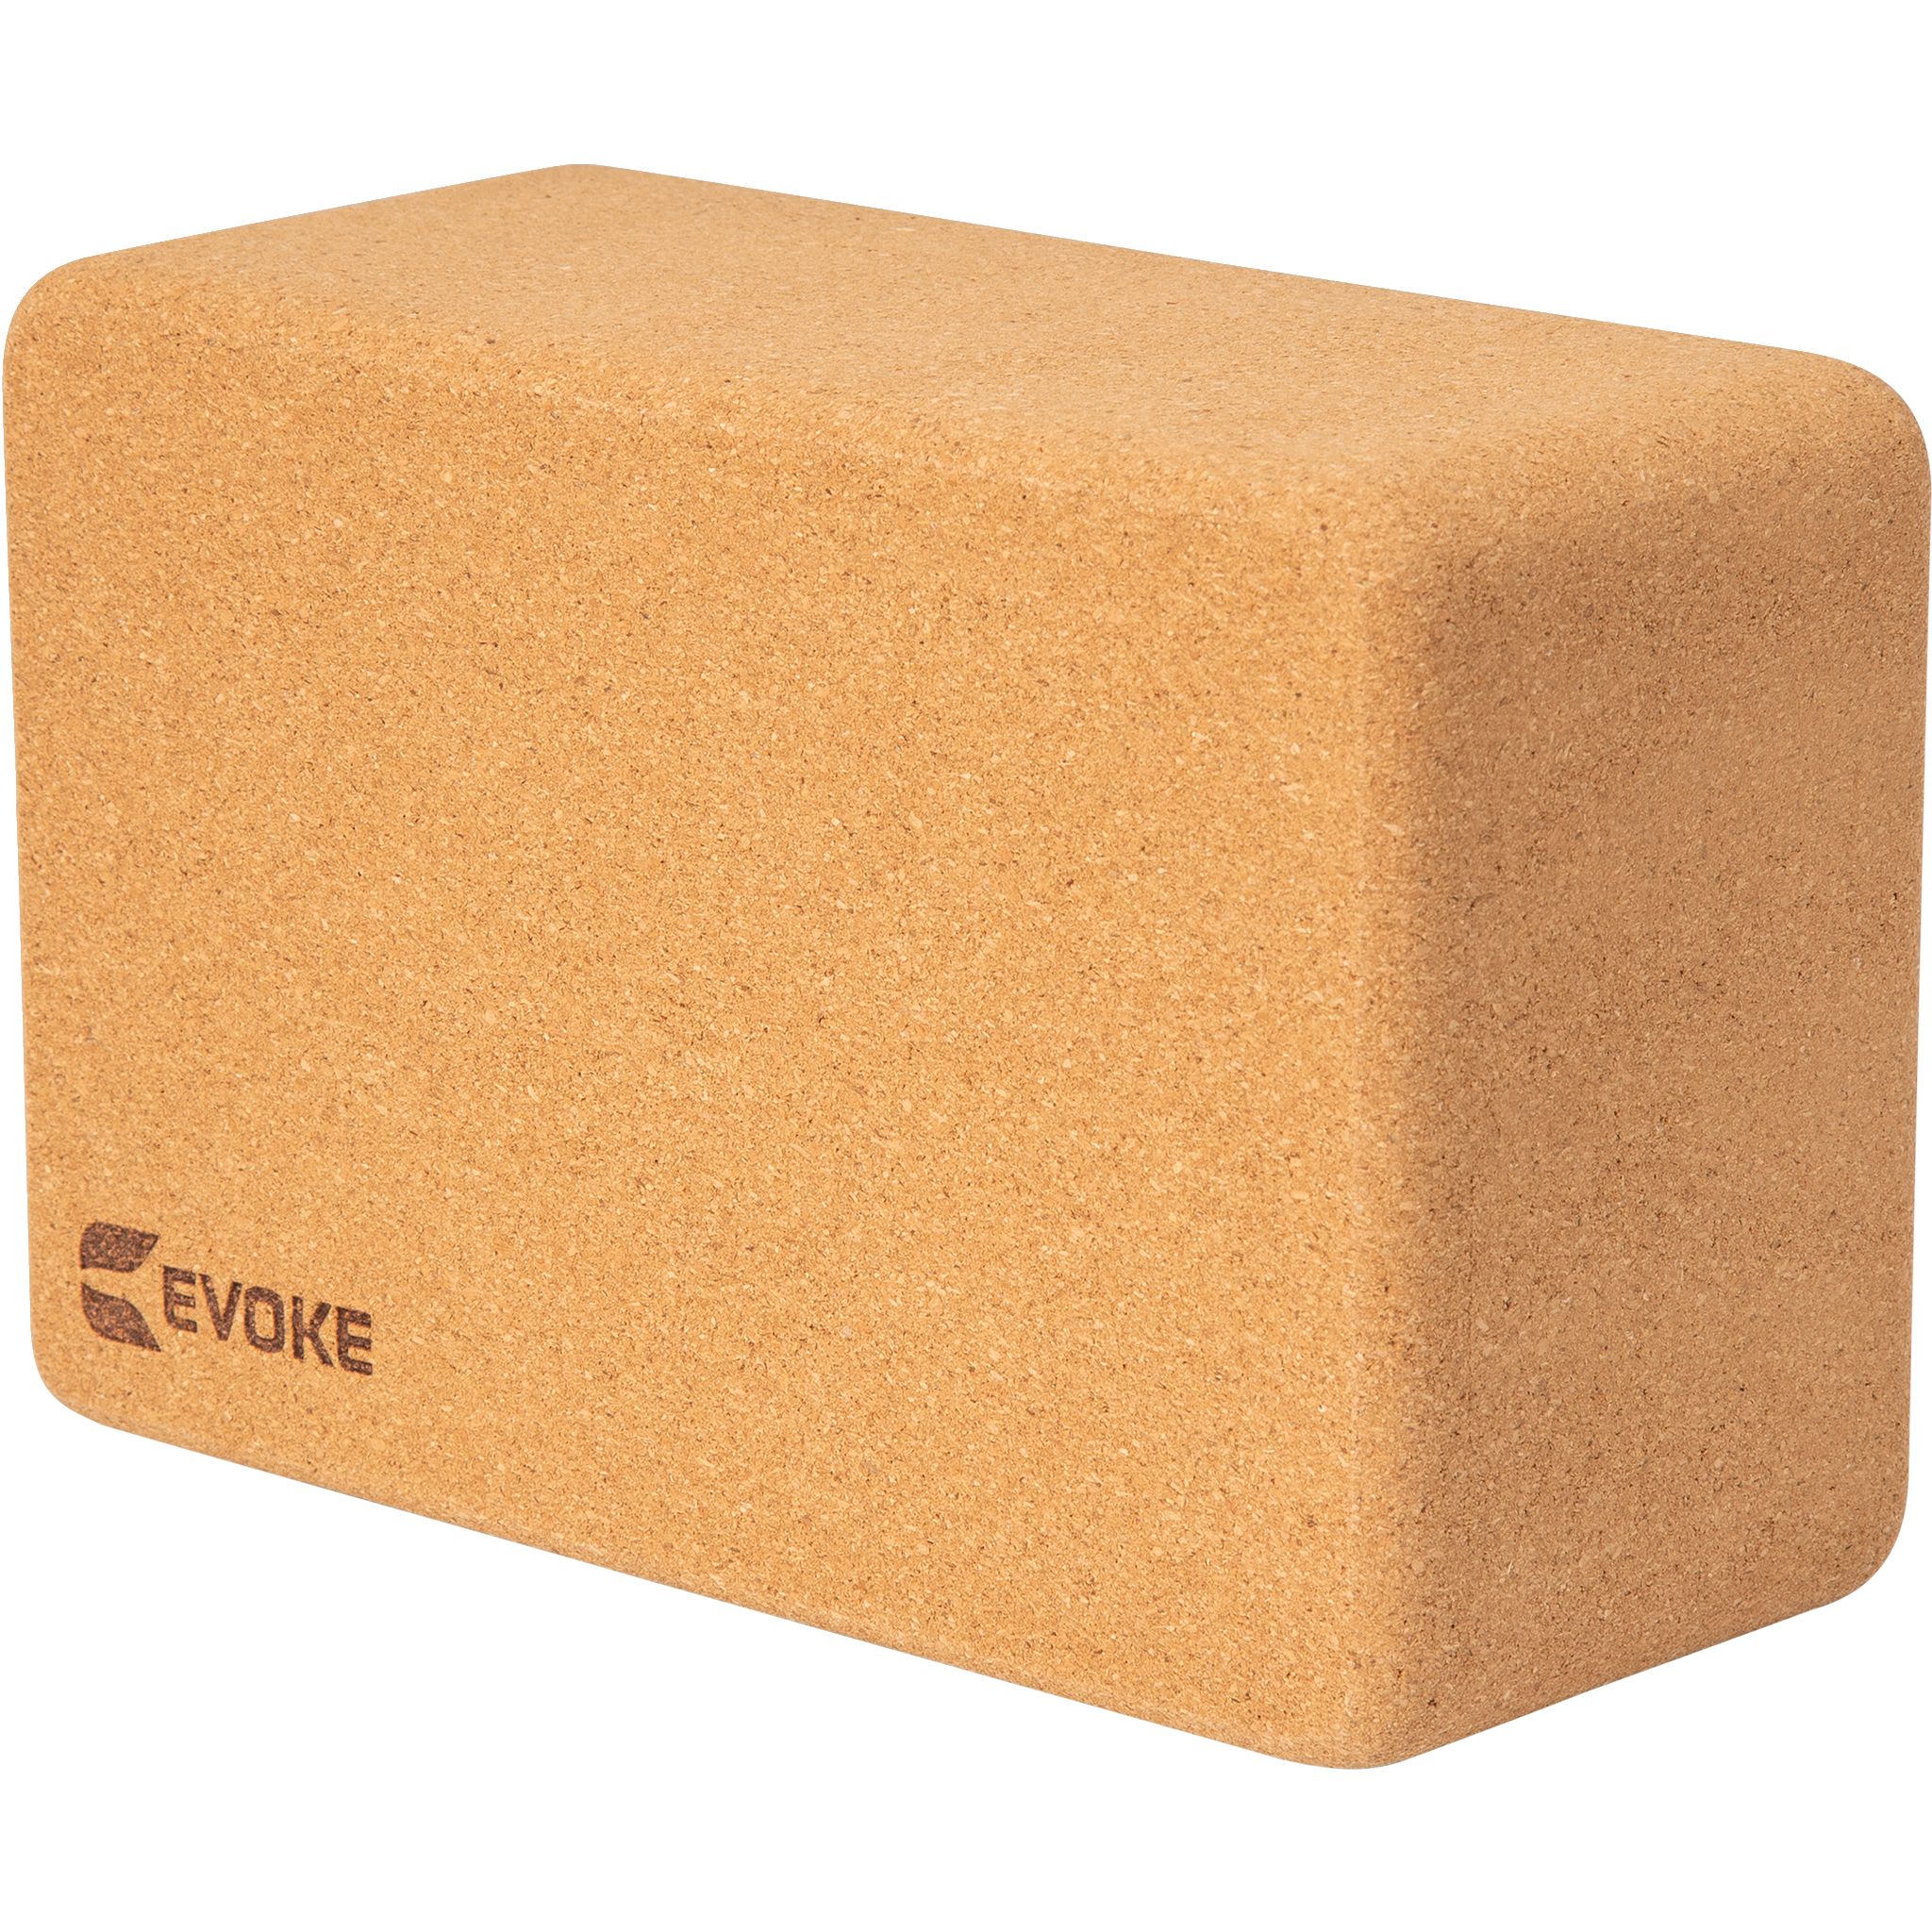 Evoke Cork Yoga Block